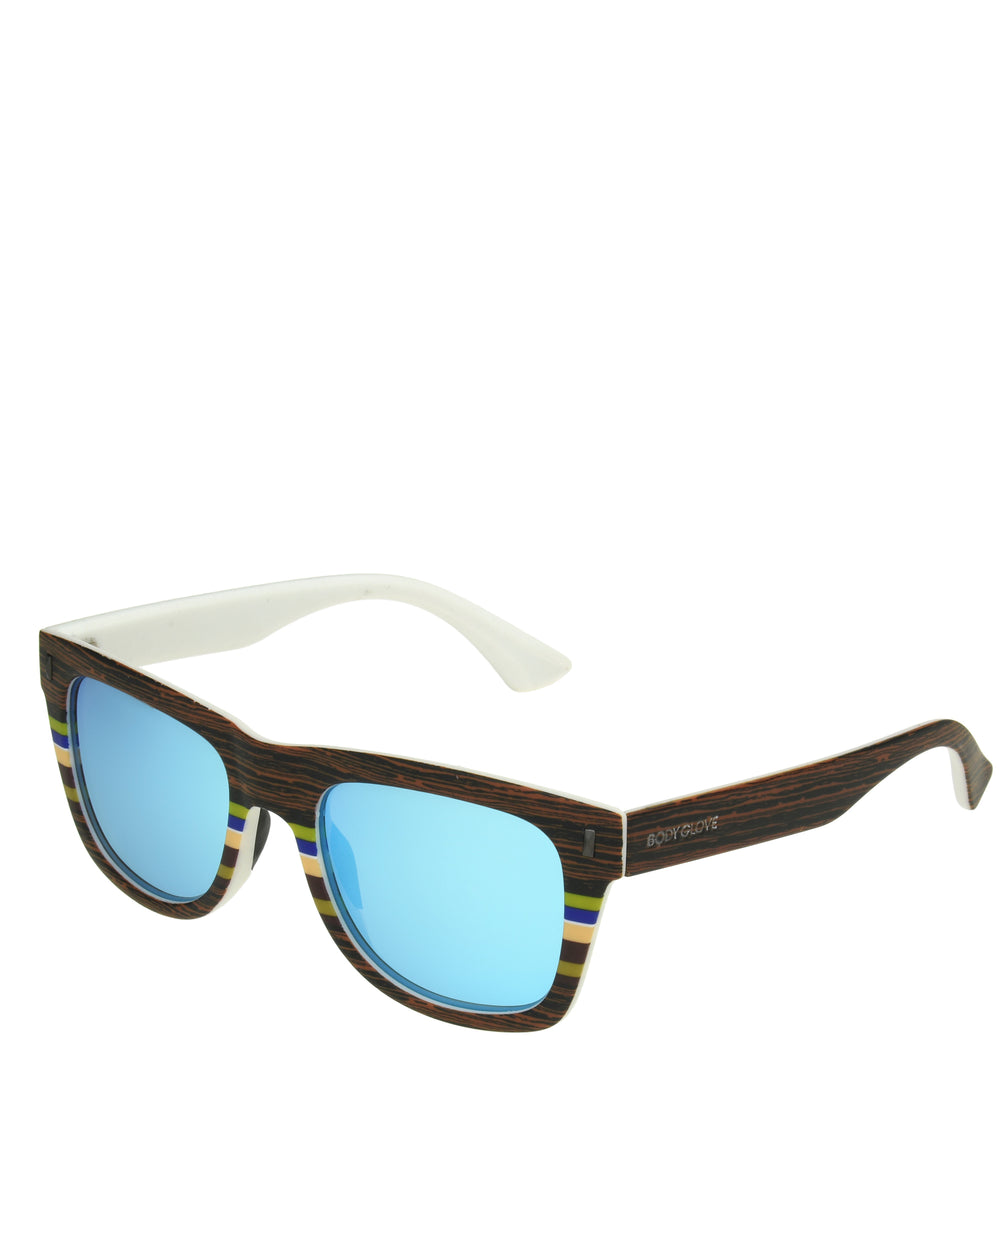 Men's BGM1091 Polarized Sunglasses - Matte Wood